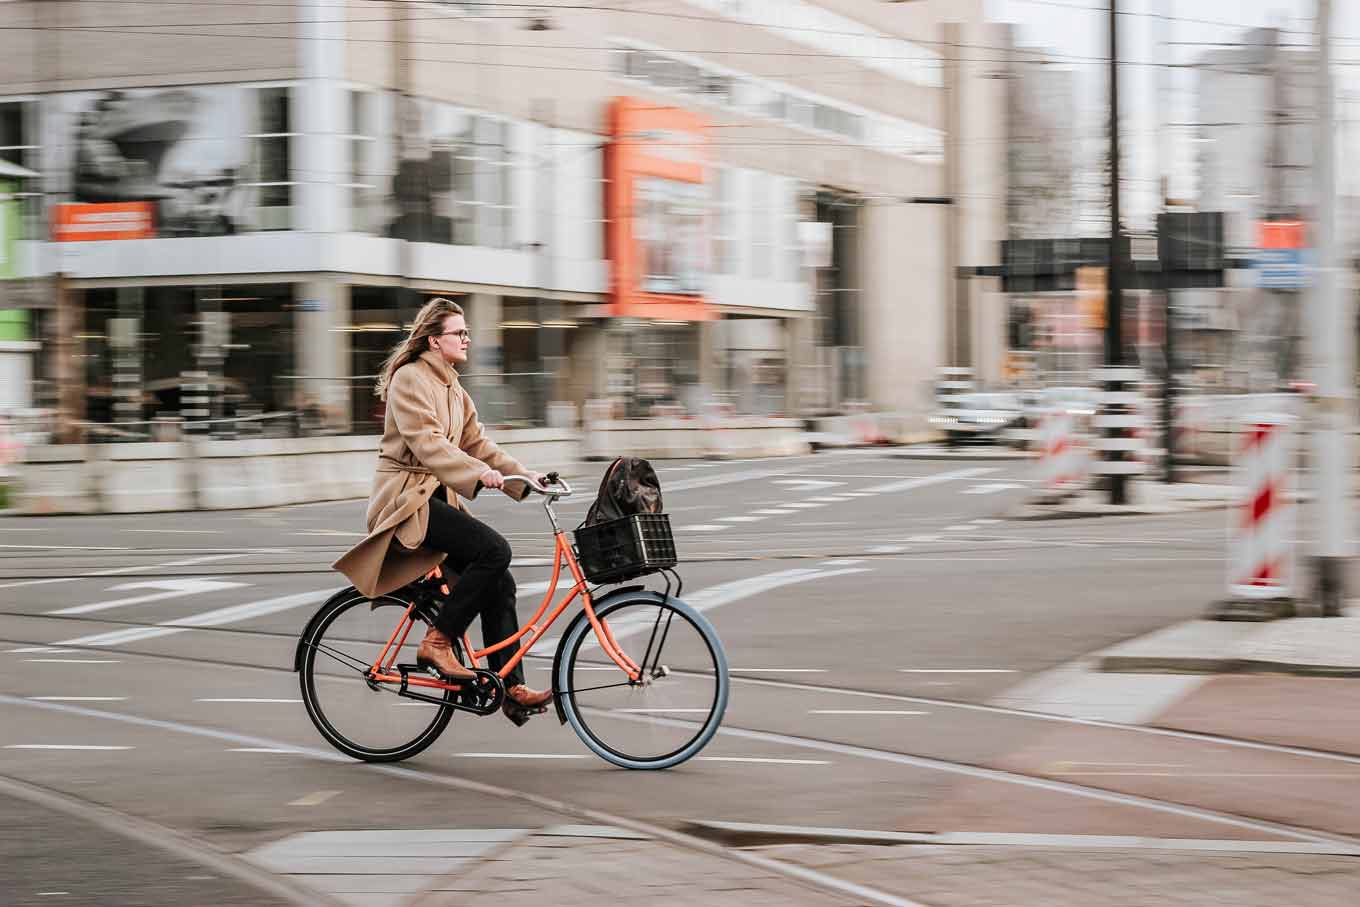 Een vrouw op een fiets die over een straat rijdt